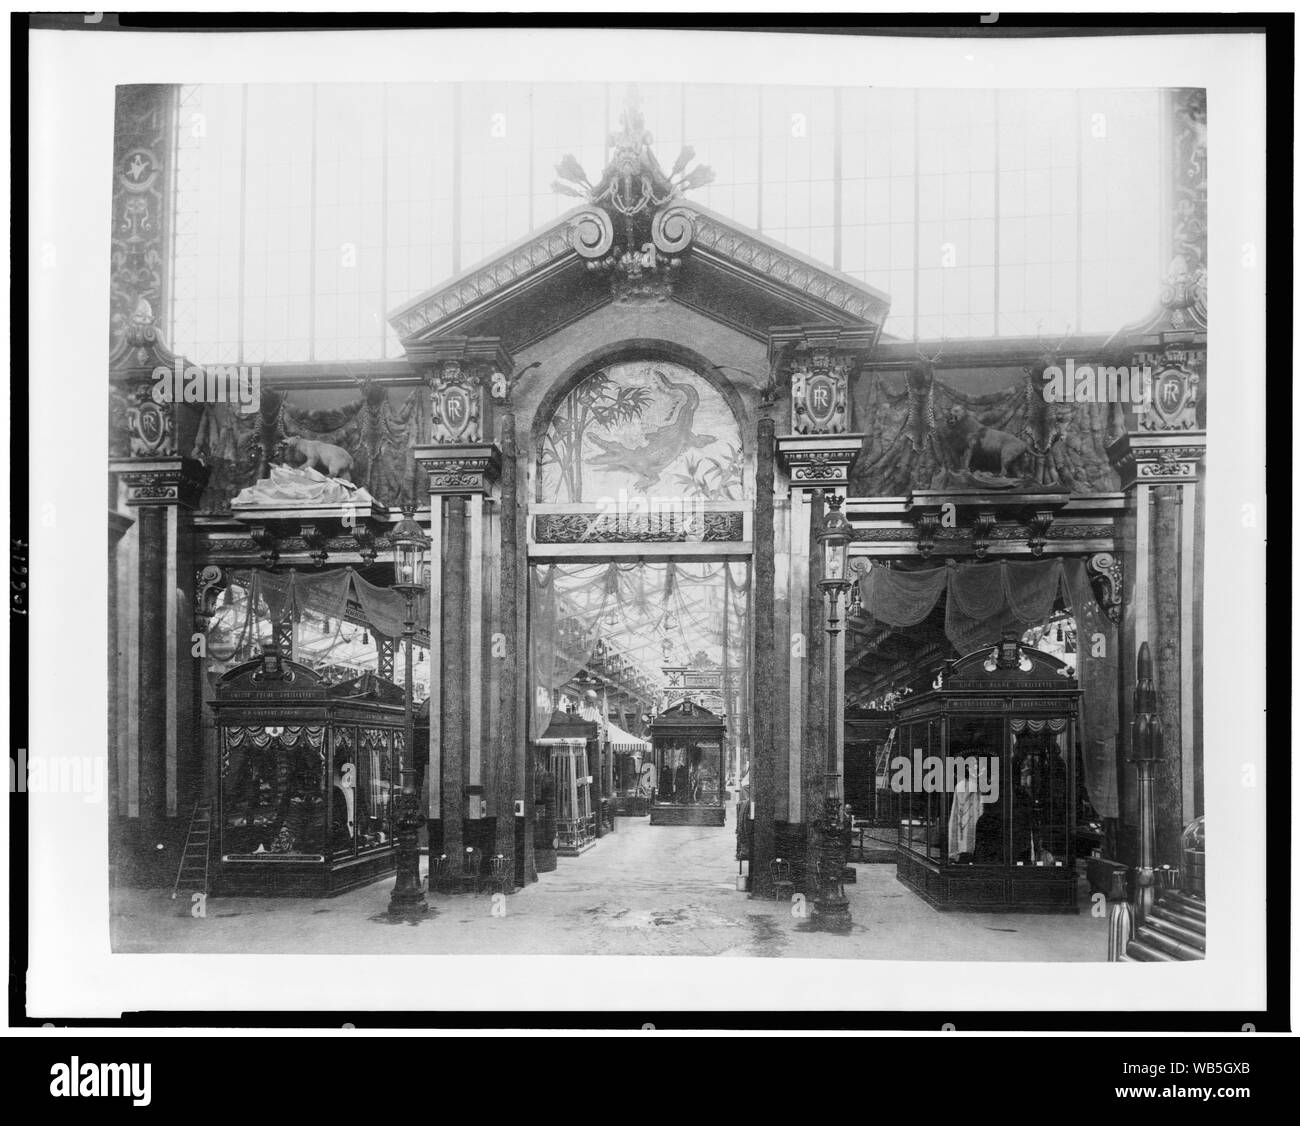 Eingang zur Ausstellung von Forstwirtschaft, Jagd & Angeln Produkte, Palast der unterschiedlichsten Branchen, Paris Exposition, 1889 Abstract / Medium: 1 photoprint: Eiweiß. Stockfoto